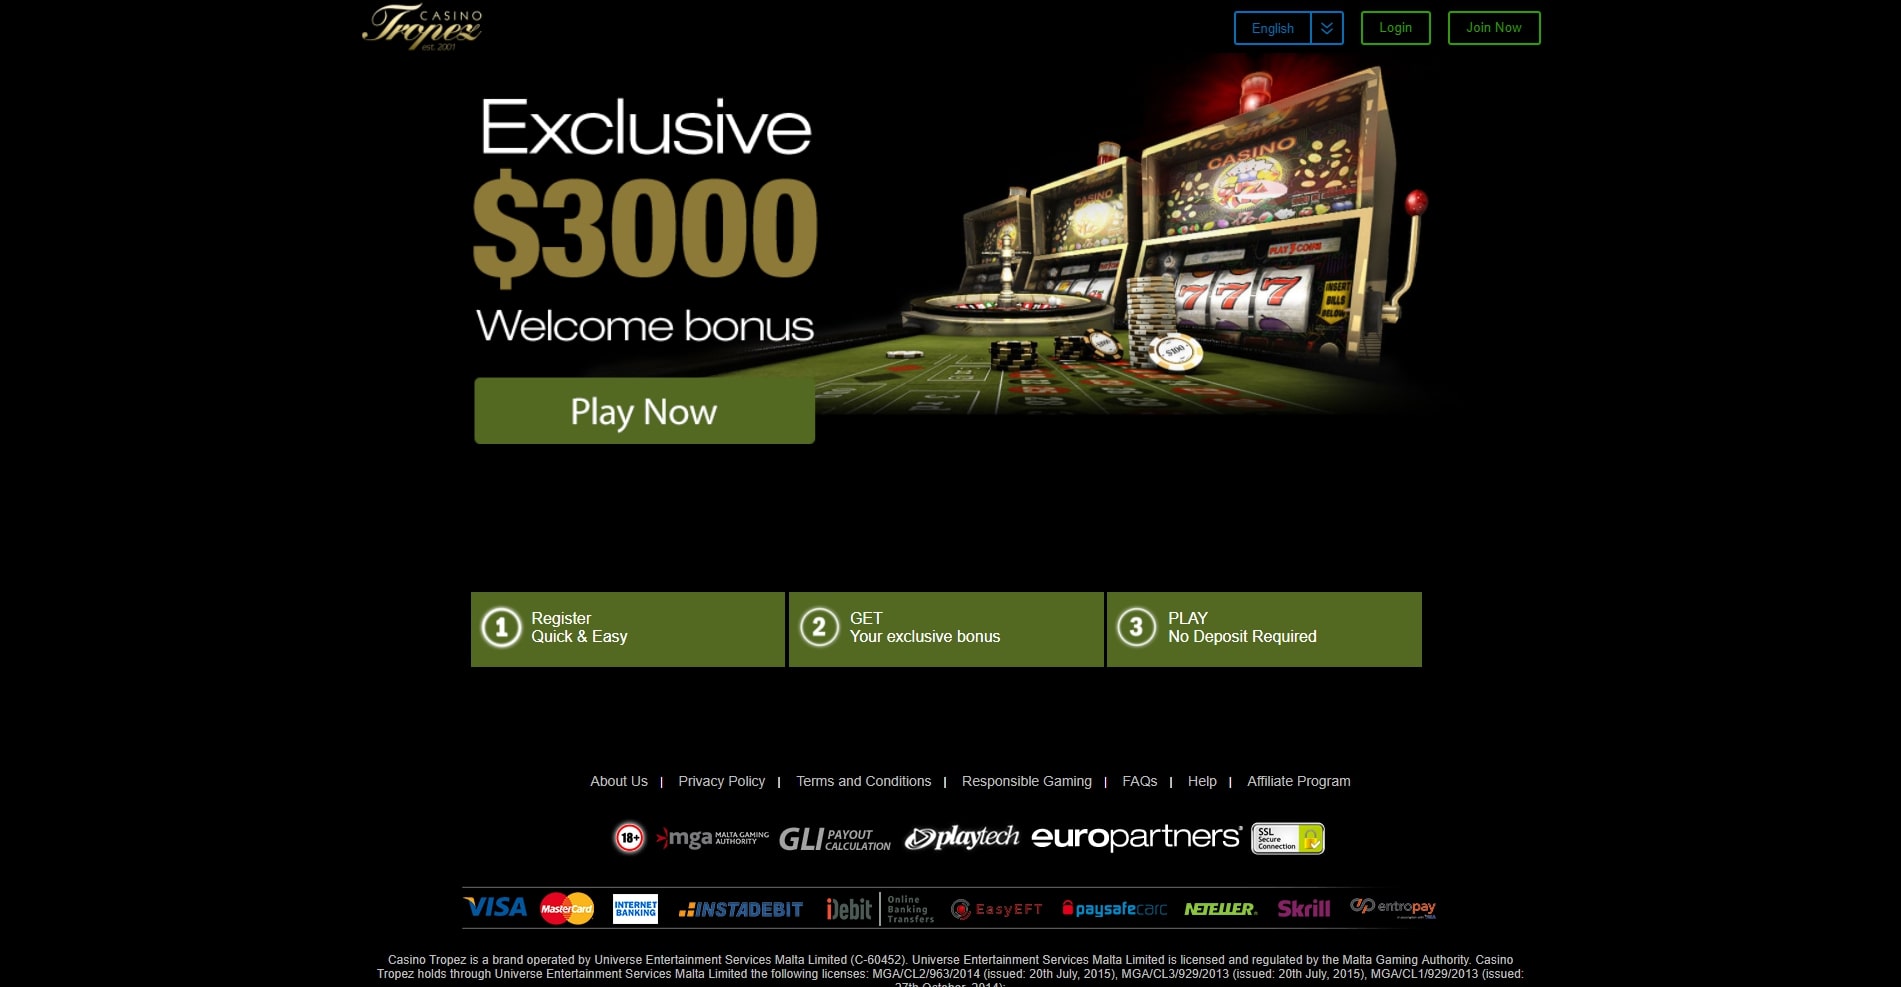 So verbessern Sie seriöse Online Casino in 60 Minuten